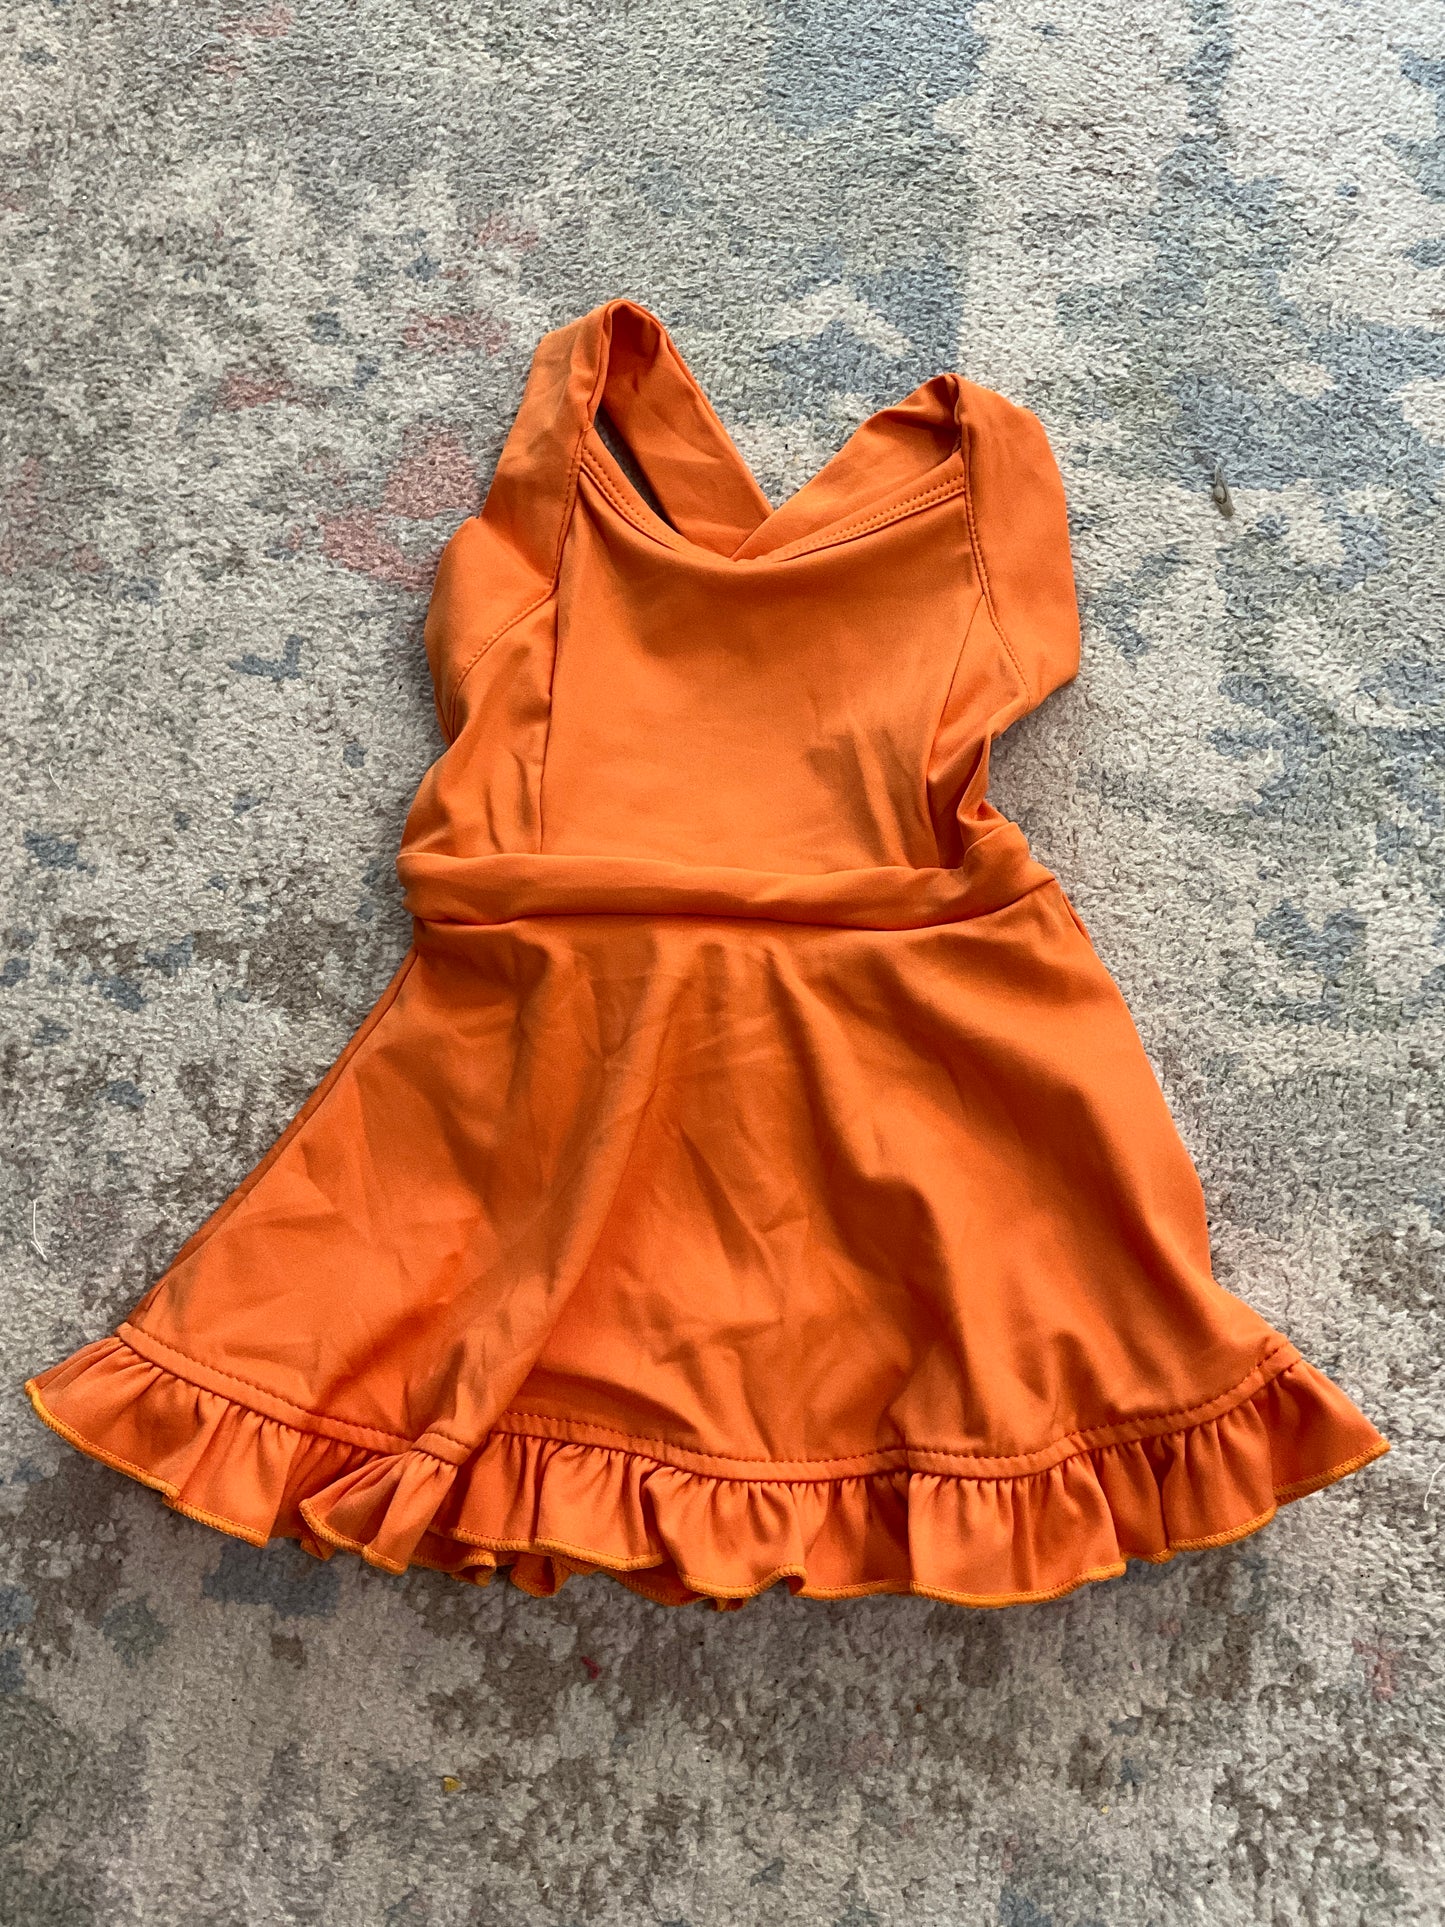 Rts- orange athletic dress